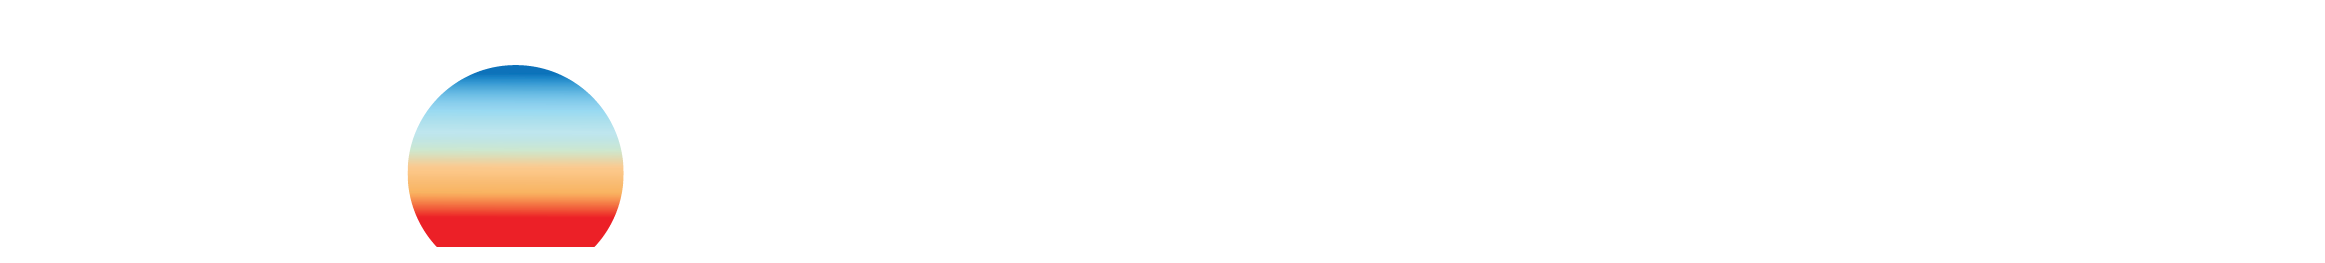 Bay To Bay Smyrna logo